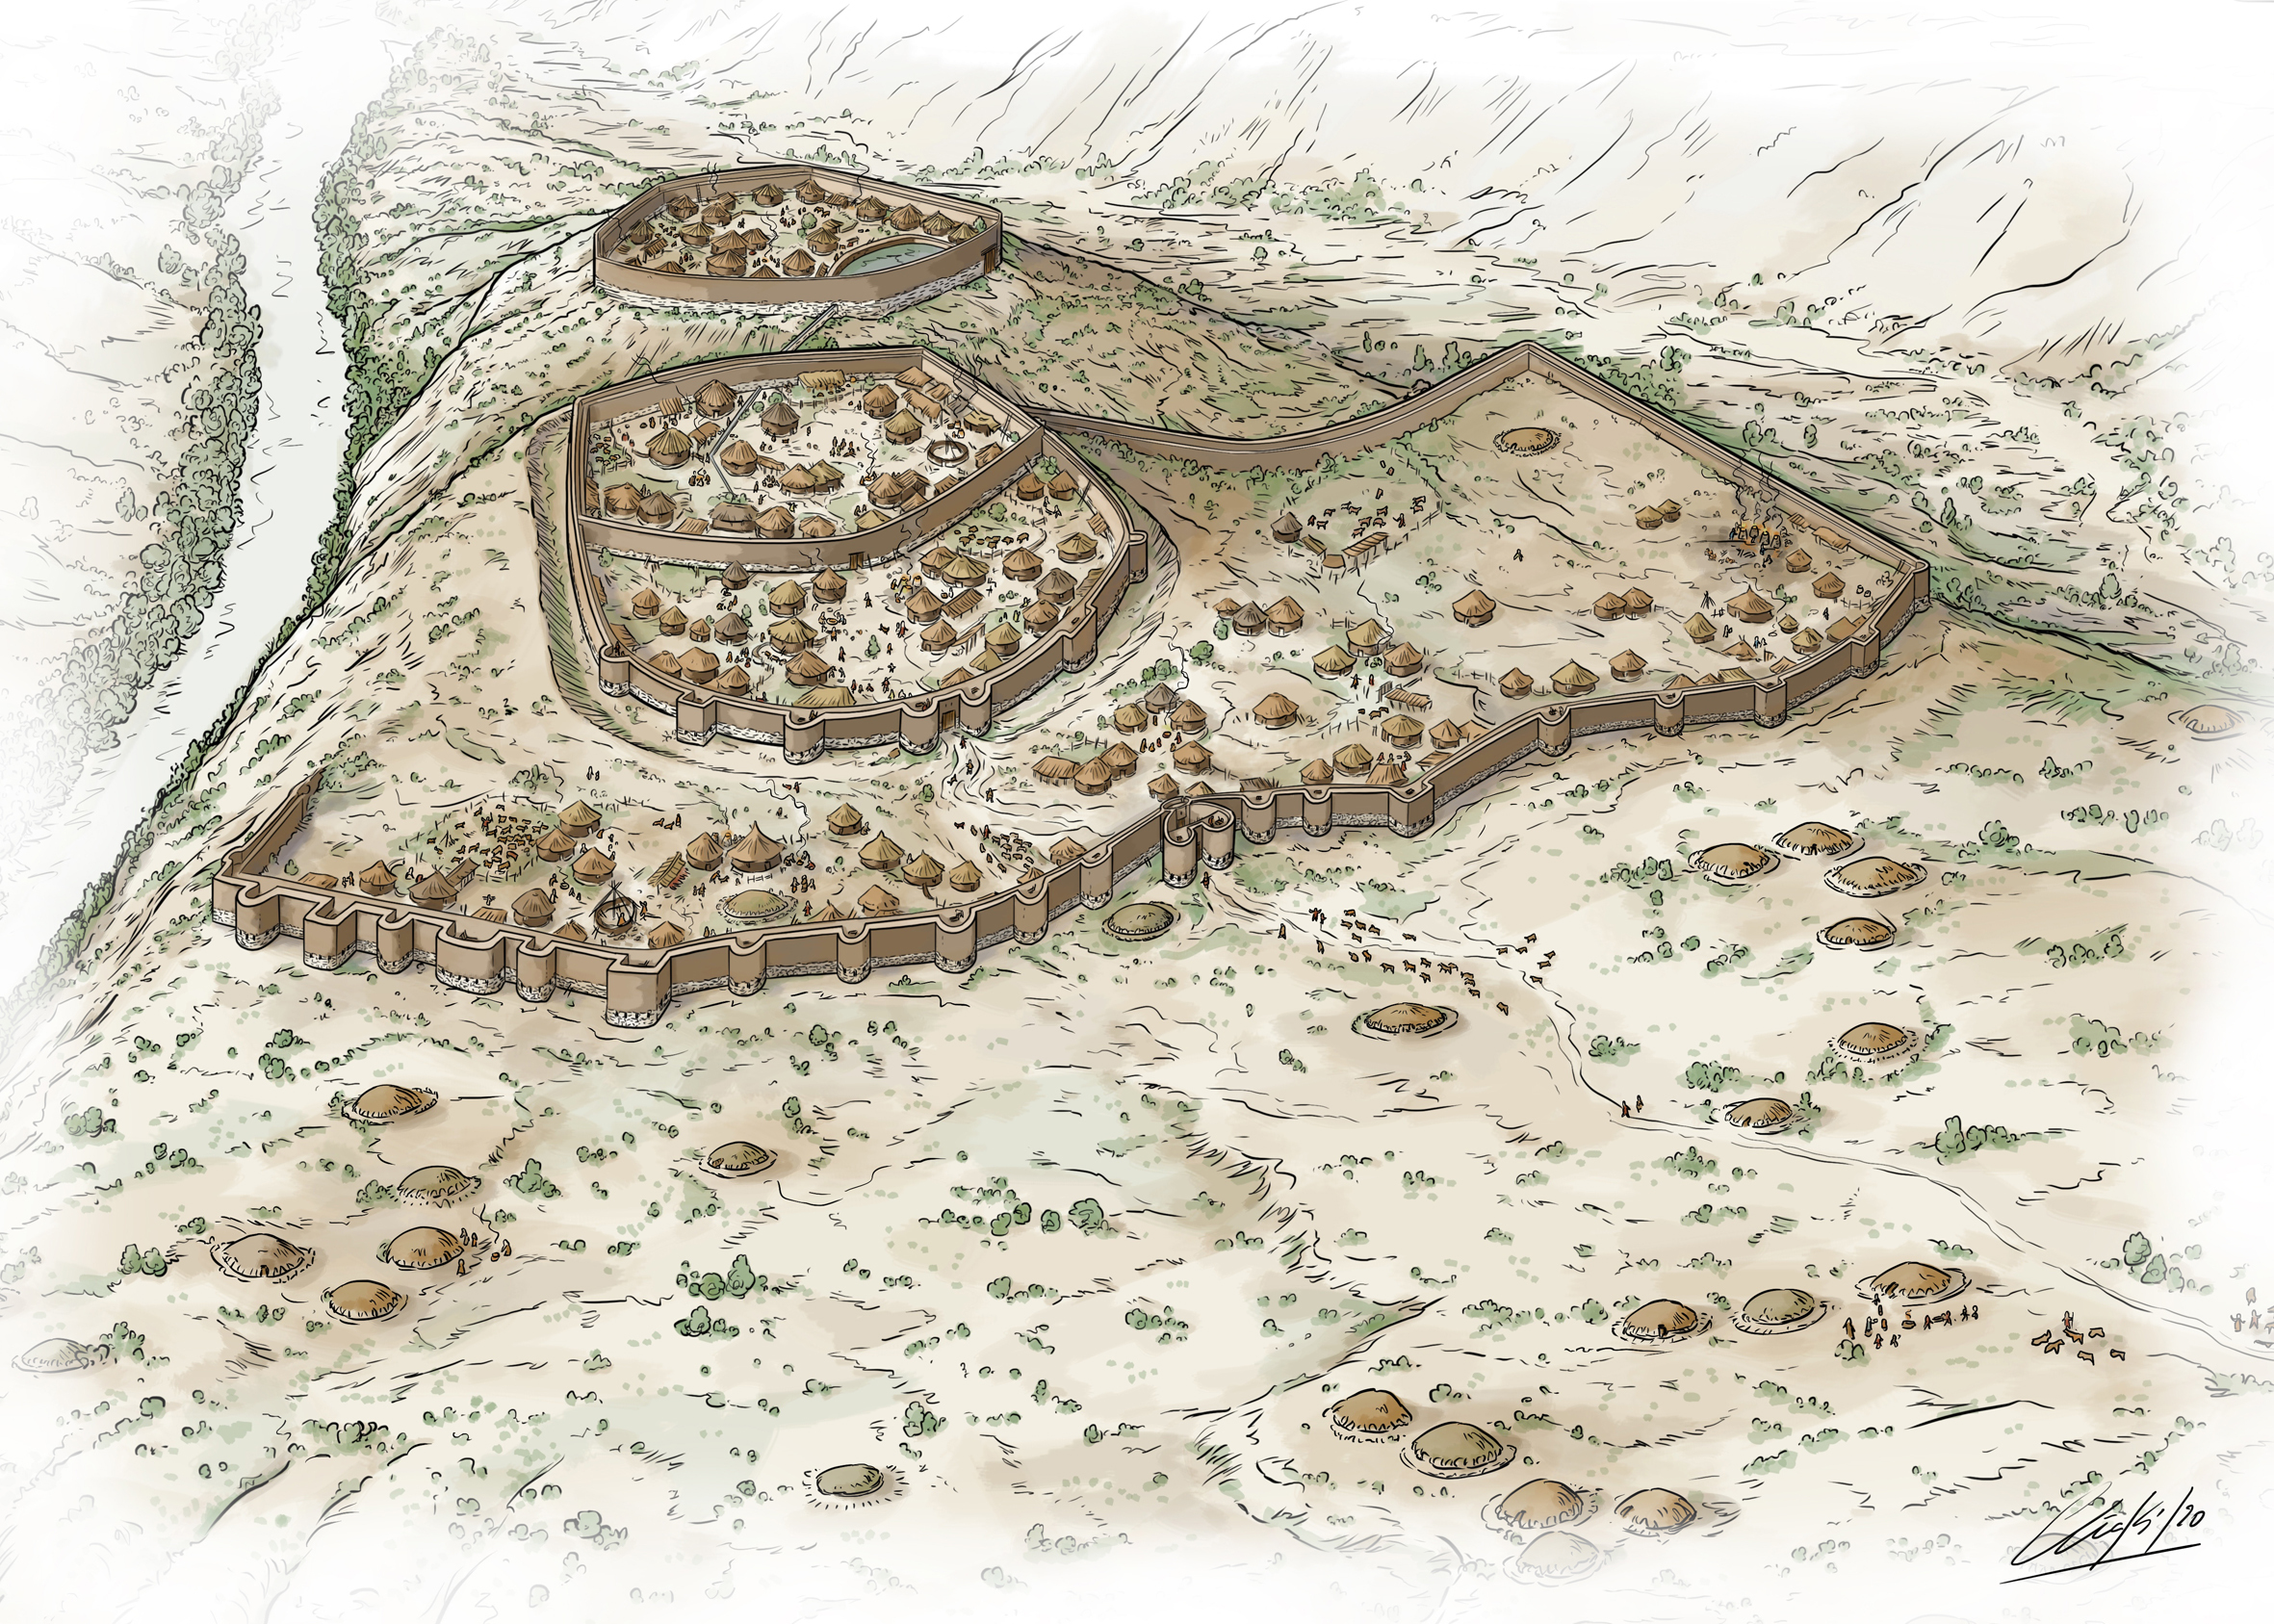 Los Millares fue un centro innovador del megalitismo desde donde se expandieron las sepulturas tipo tholos al resto de la Península Ibérica